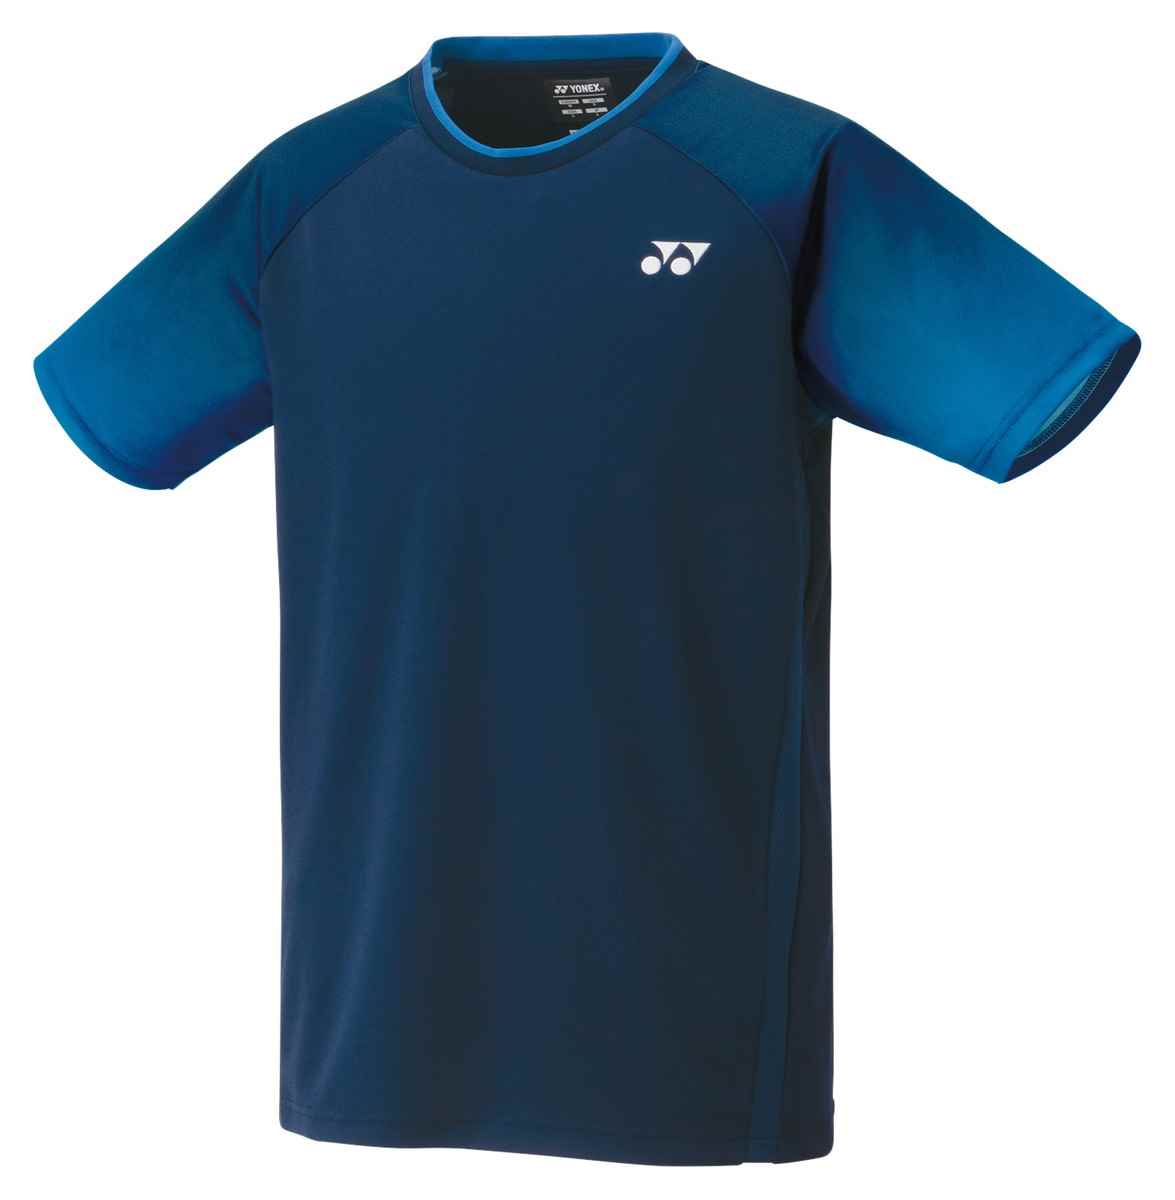 ヨネックス YONEX 10469 テニス・バドミントン ウエア(ユニ) ユニゲームシャツ(フィットスタイル) ネイ..